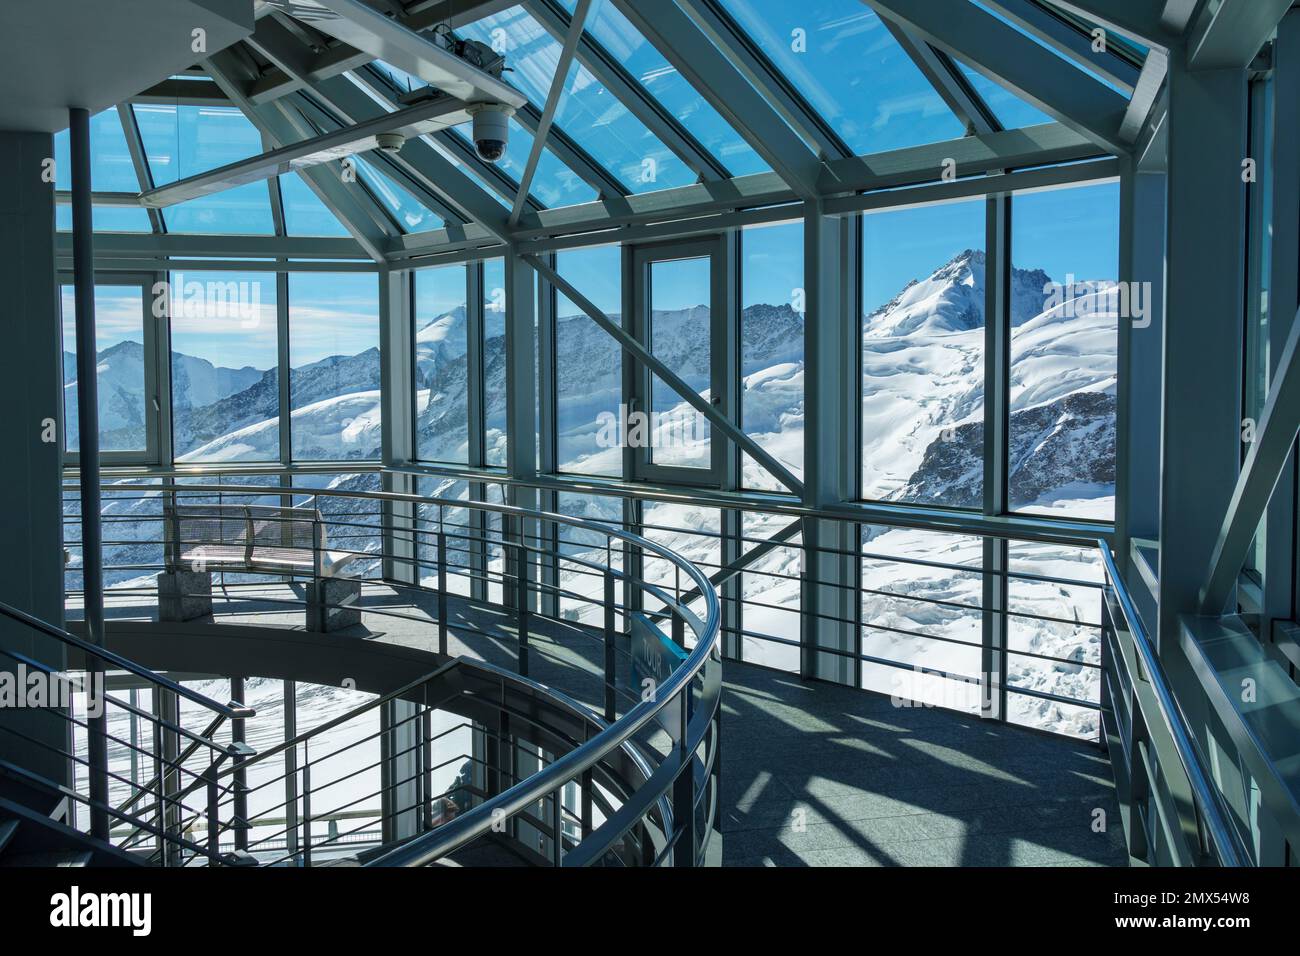 Intérieur architectural en verre et en métal avec ombres et vue alpine enneigée - horizontale Banque D'Images